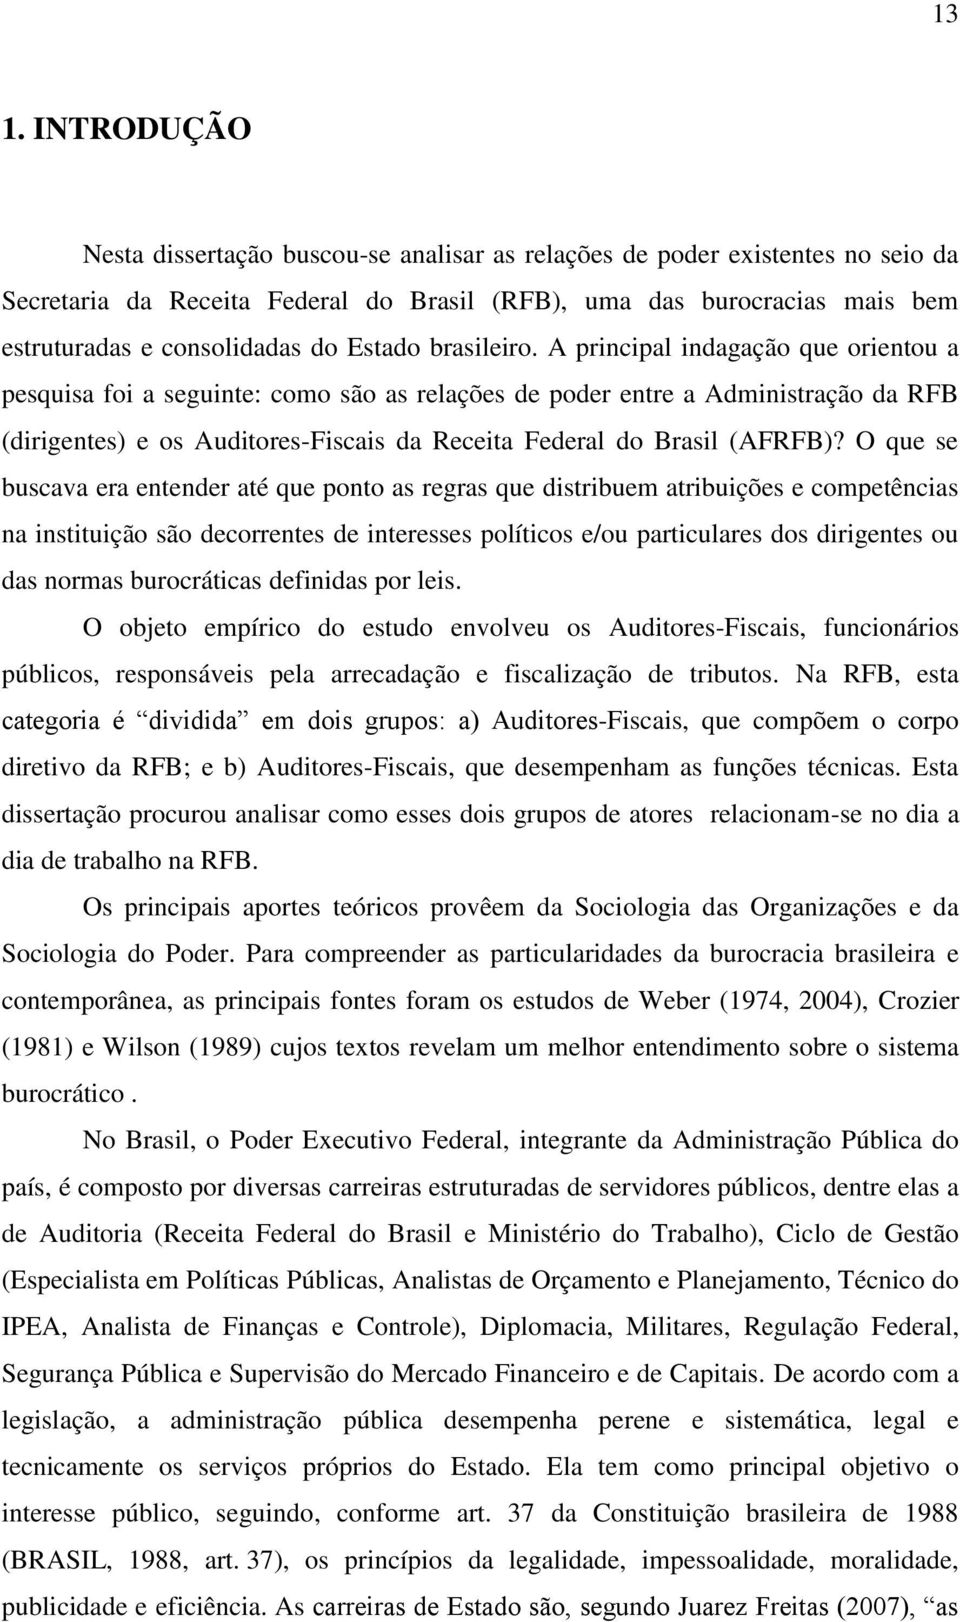 A principal indagação que orientou a pesquisa foi a seguinte: como são as relações de poder entre a Administração da RFB (dirigentes) e os Auditores-Fiscais da Receita Federal do Brasil (AFRFB)?